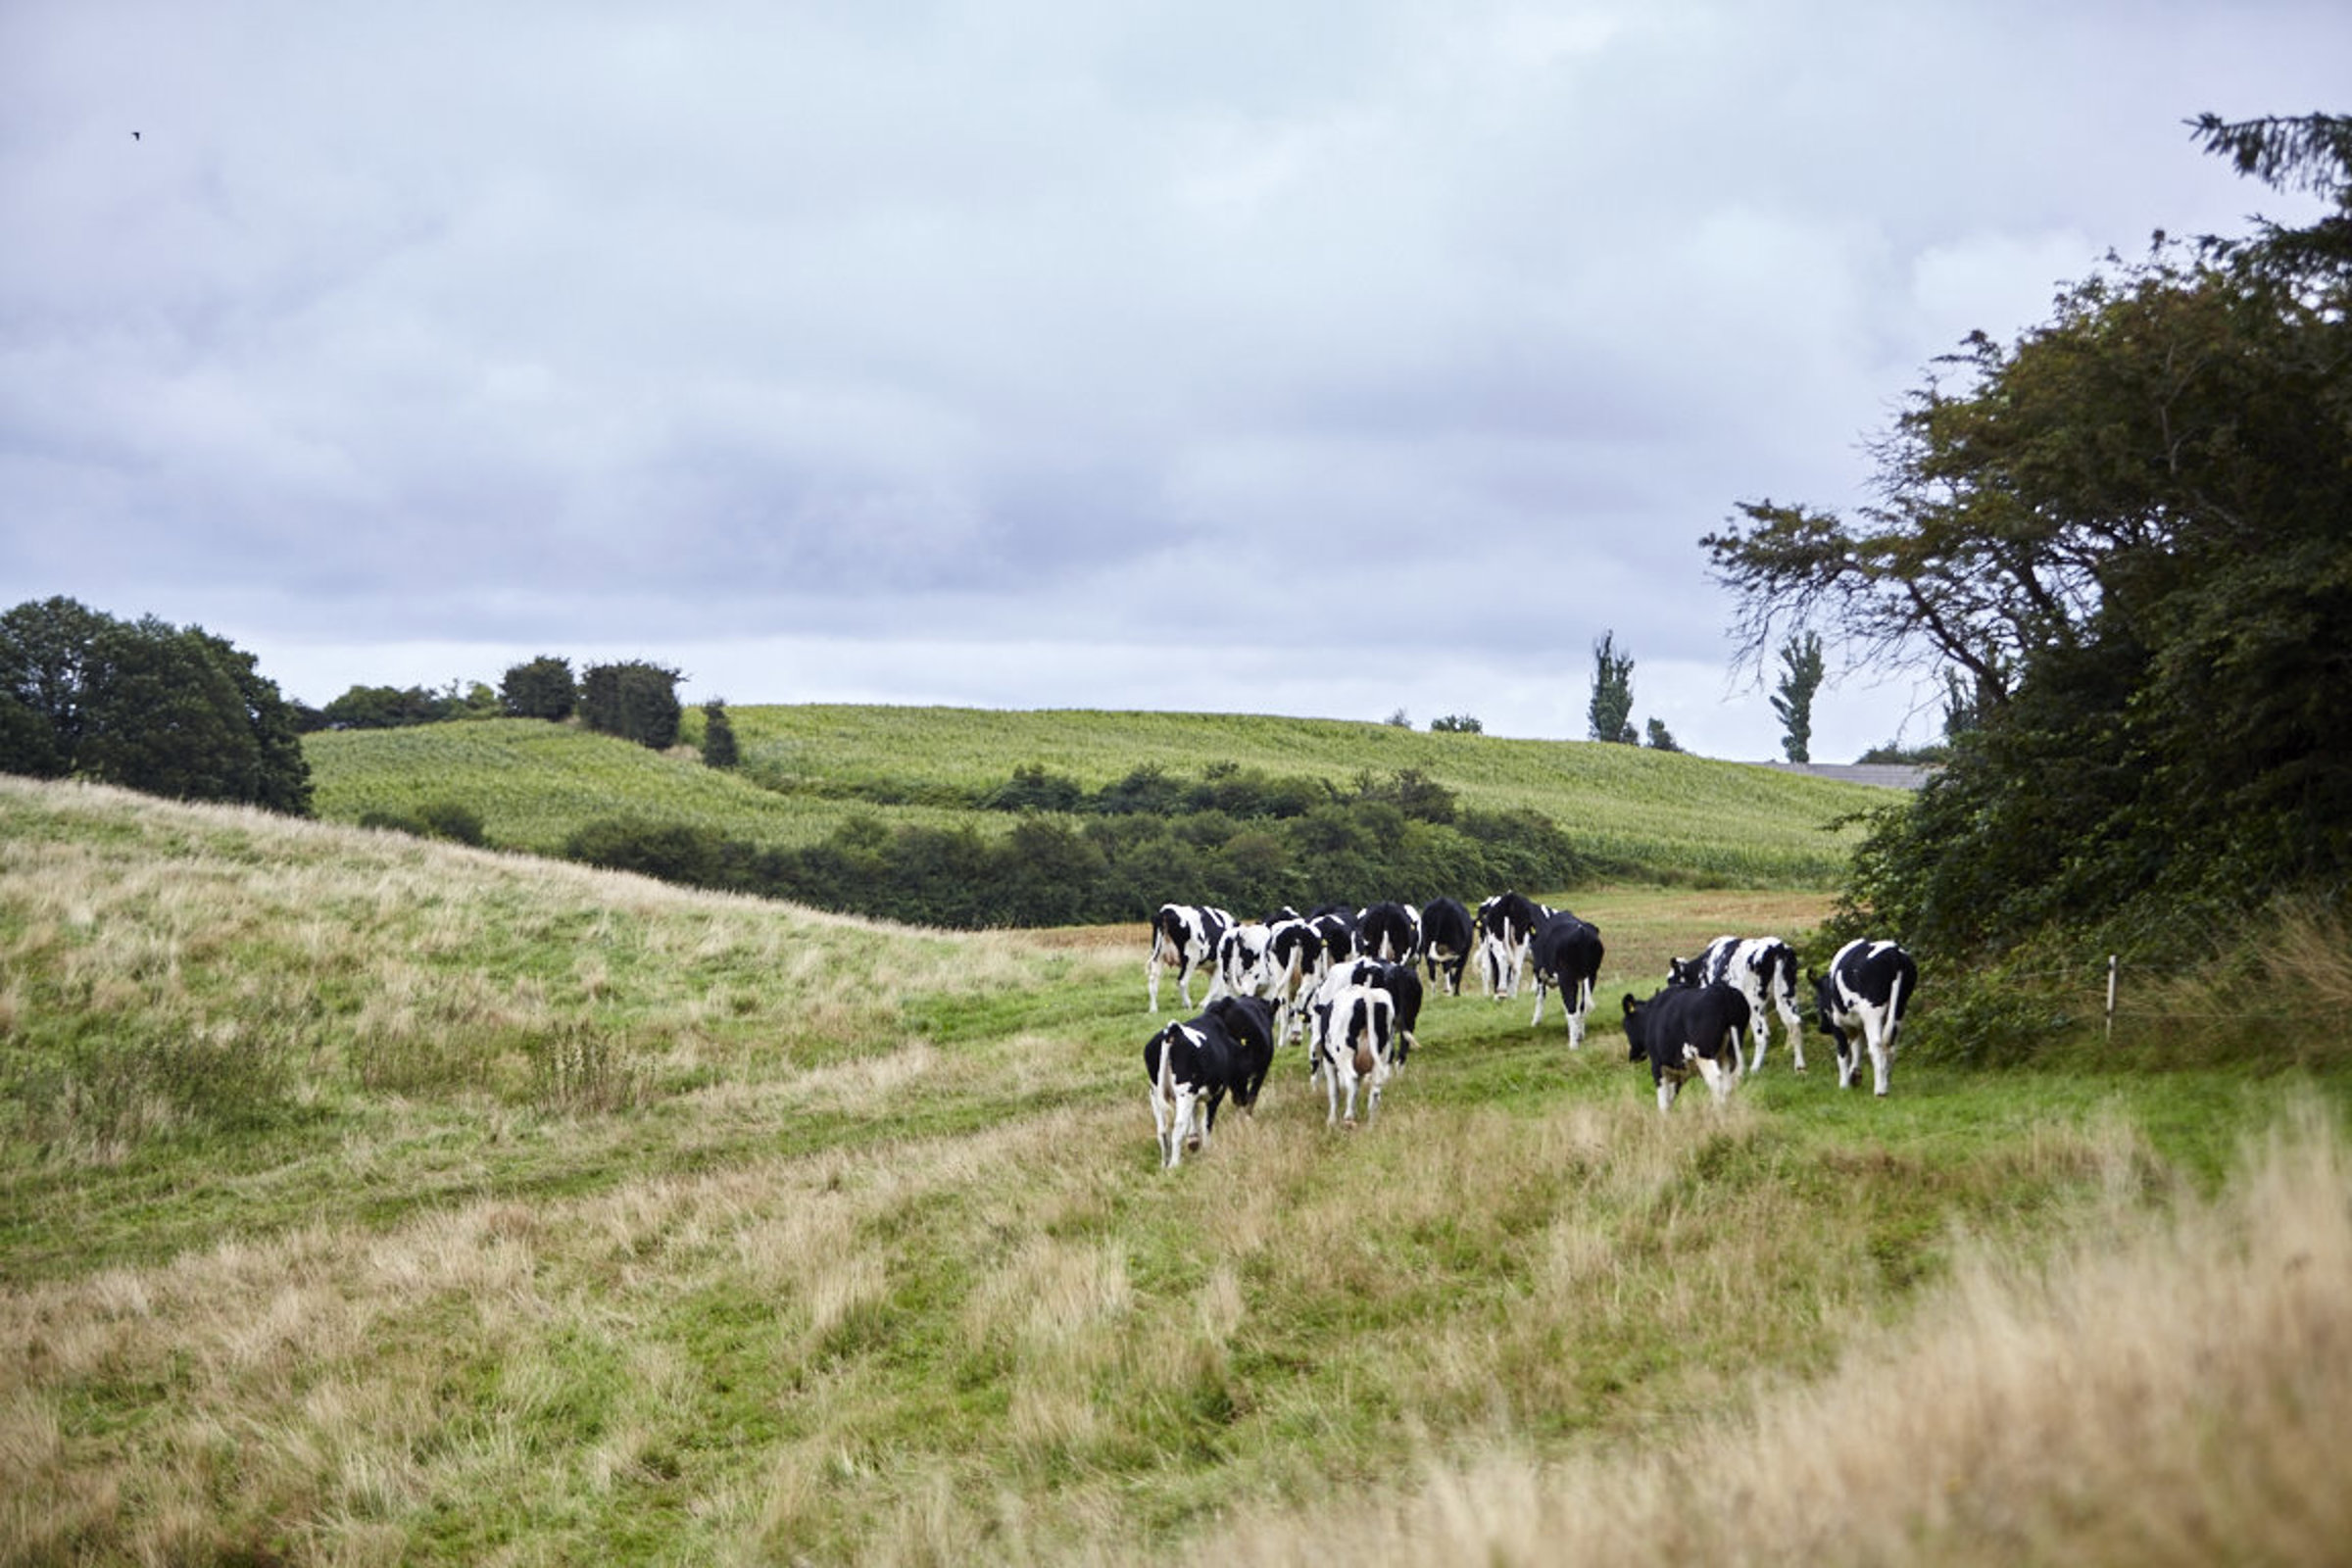 Cows walking in field